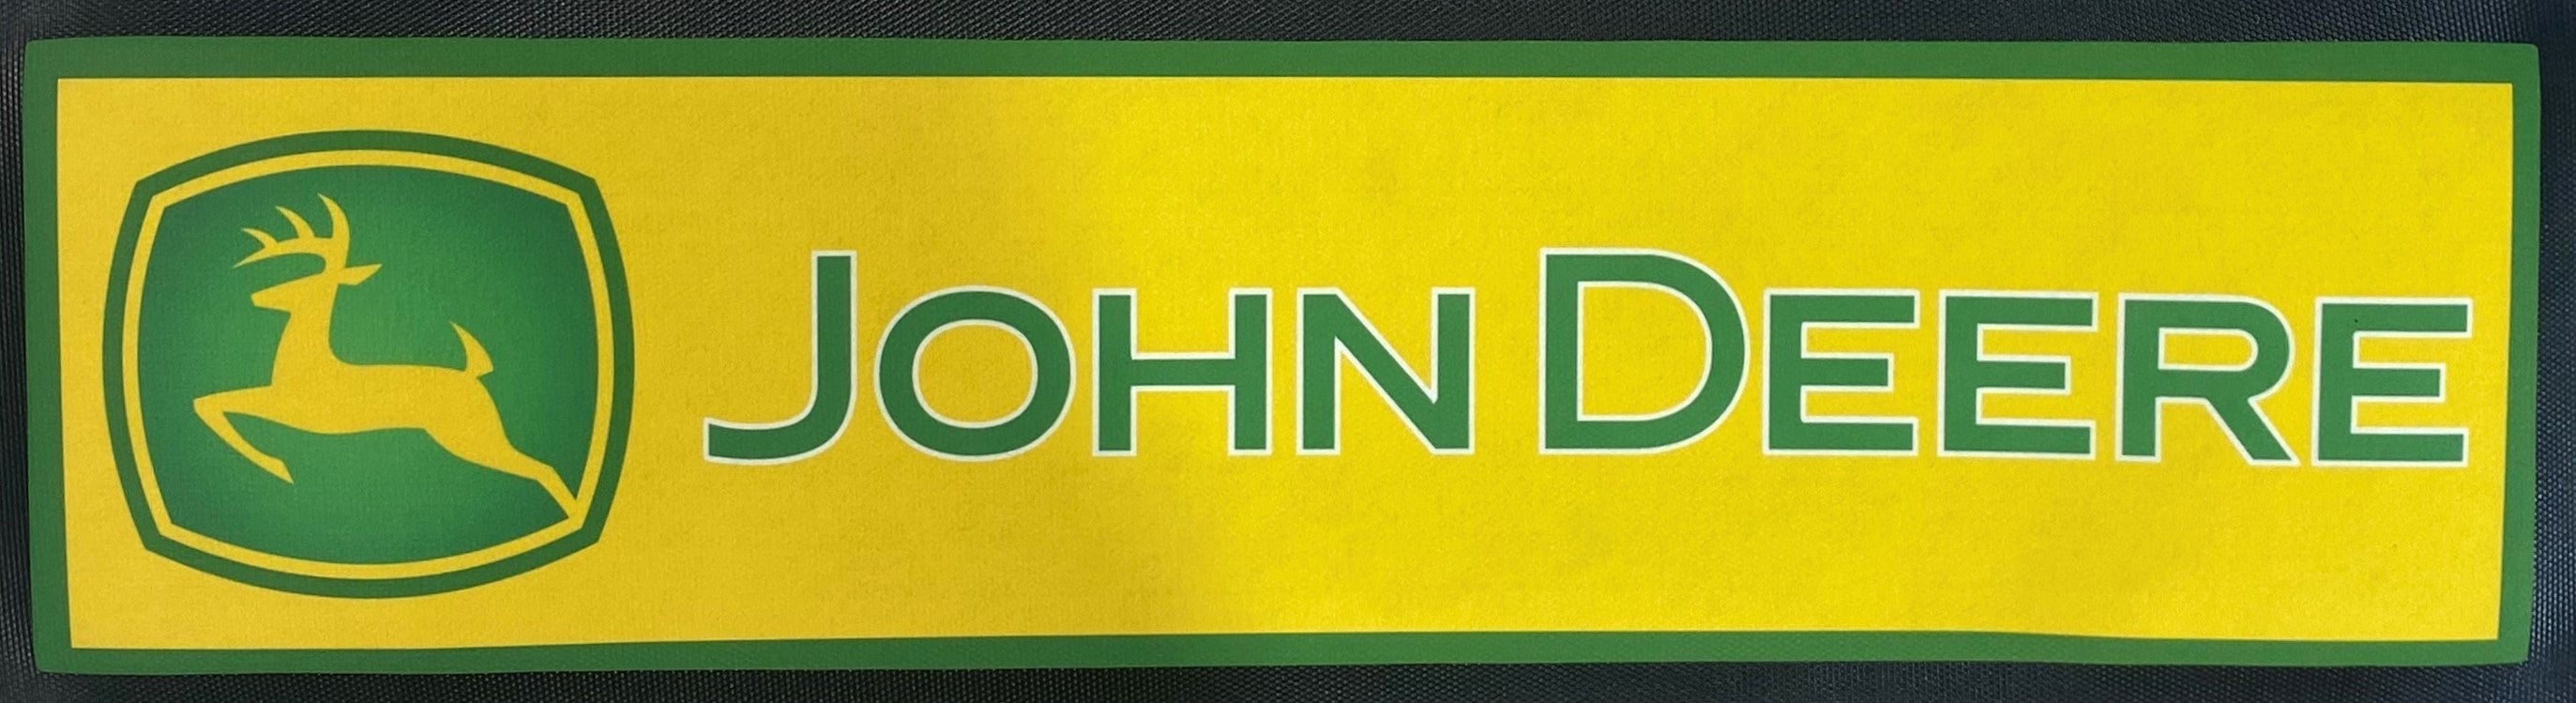 John Deere Premium Rubber-Backed Bar Mat Runner - KING CAVE